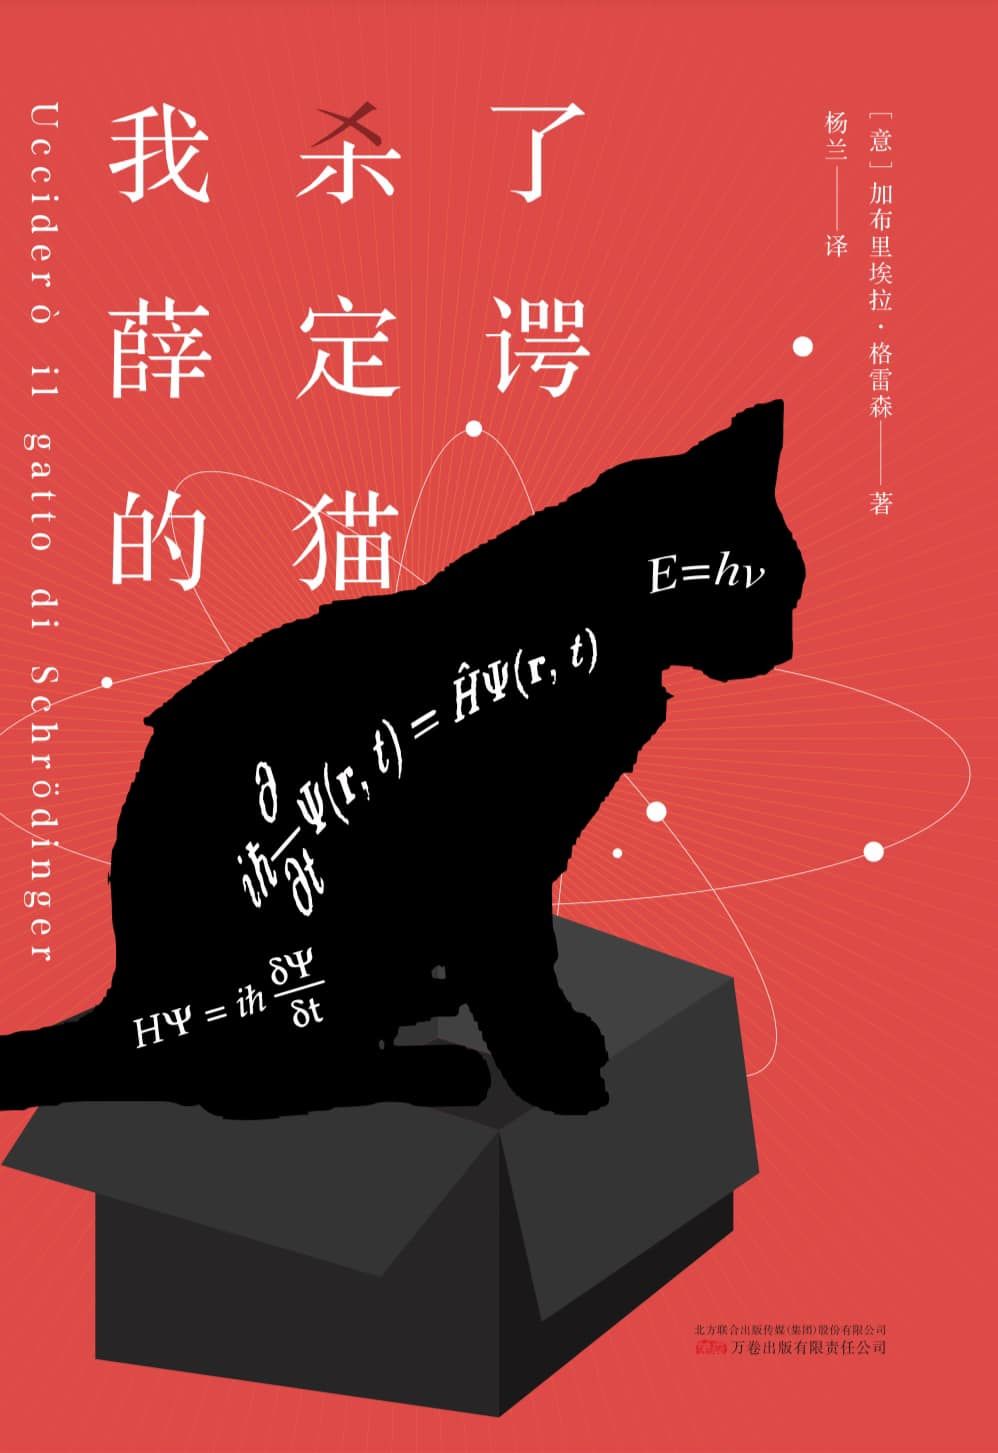 L’edizione cinese del mio romanzo UCCIDERÒ IL GATTO DI SCHRÖDINGER è pronta…ecco la copertina!